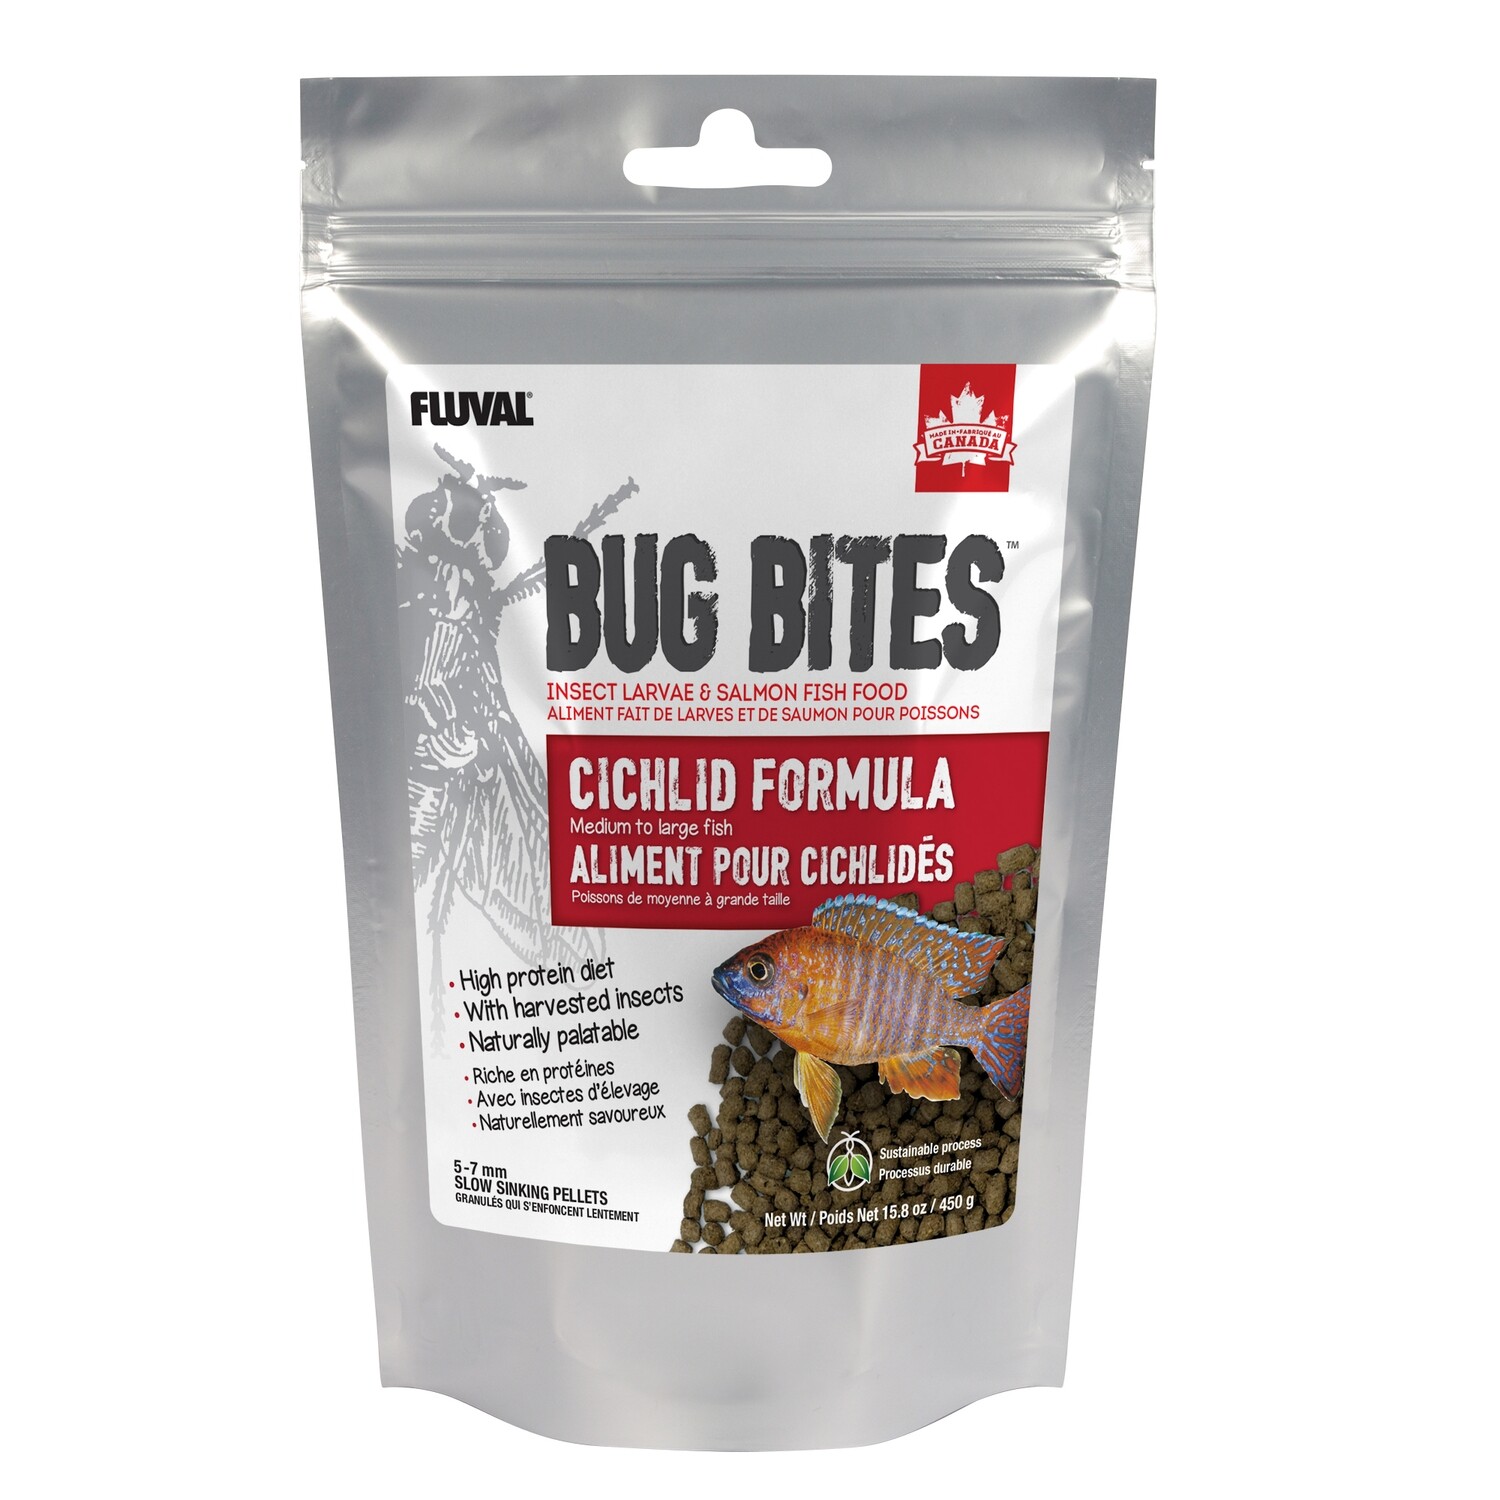 Fluval Bug Bites Cichlid Formula - Medium to Large Fish - 5-7 mm pellets - 450 g